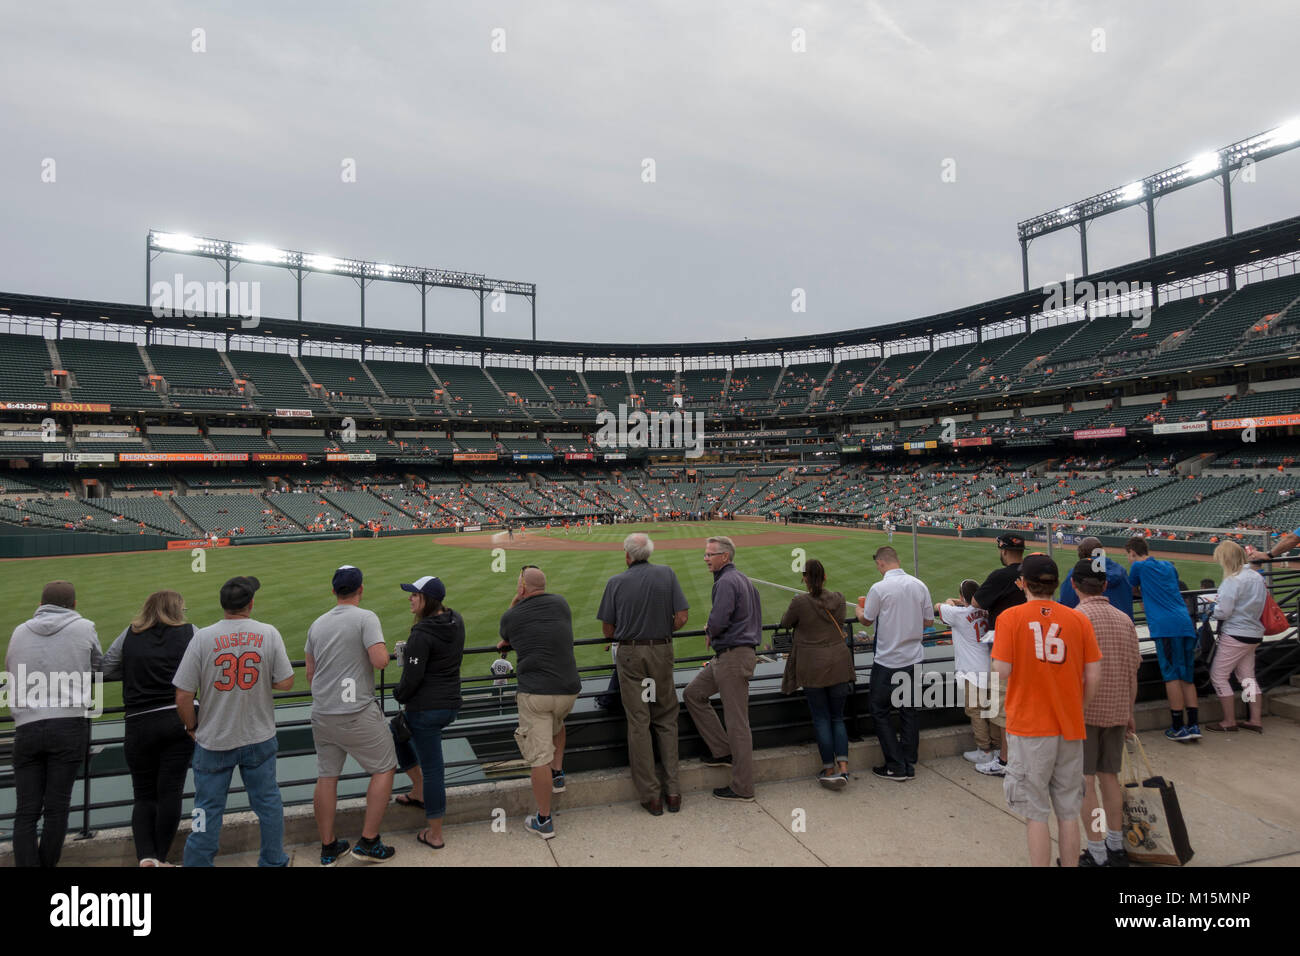 Voir l'avant-match de fans à l'intérieur de l'Oriole Park at Camden Yards, domicile de la Ligue Majeure de Baseball Des Orioles de Baltimore, dans l'équipe de Baltimore, Maryland, USA. Banque D'Images